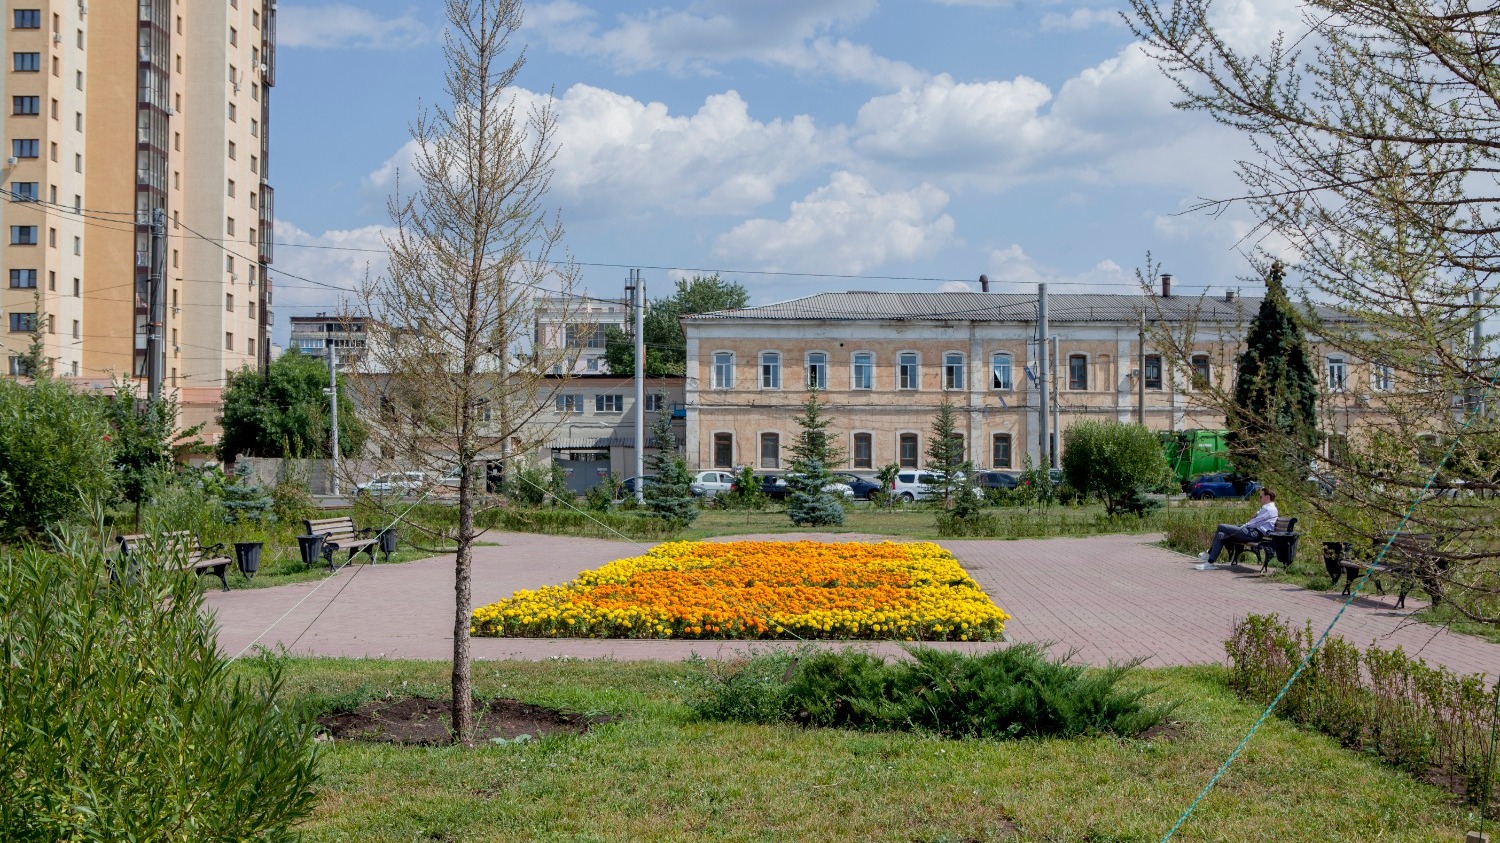 Площадь Павших остается одной из двух старых площадей Челябинска, сохранившихся с дореволюционных времен